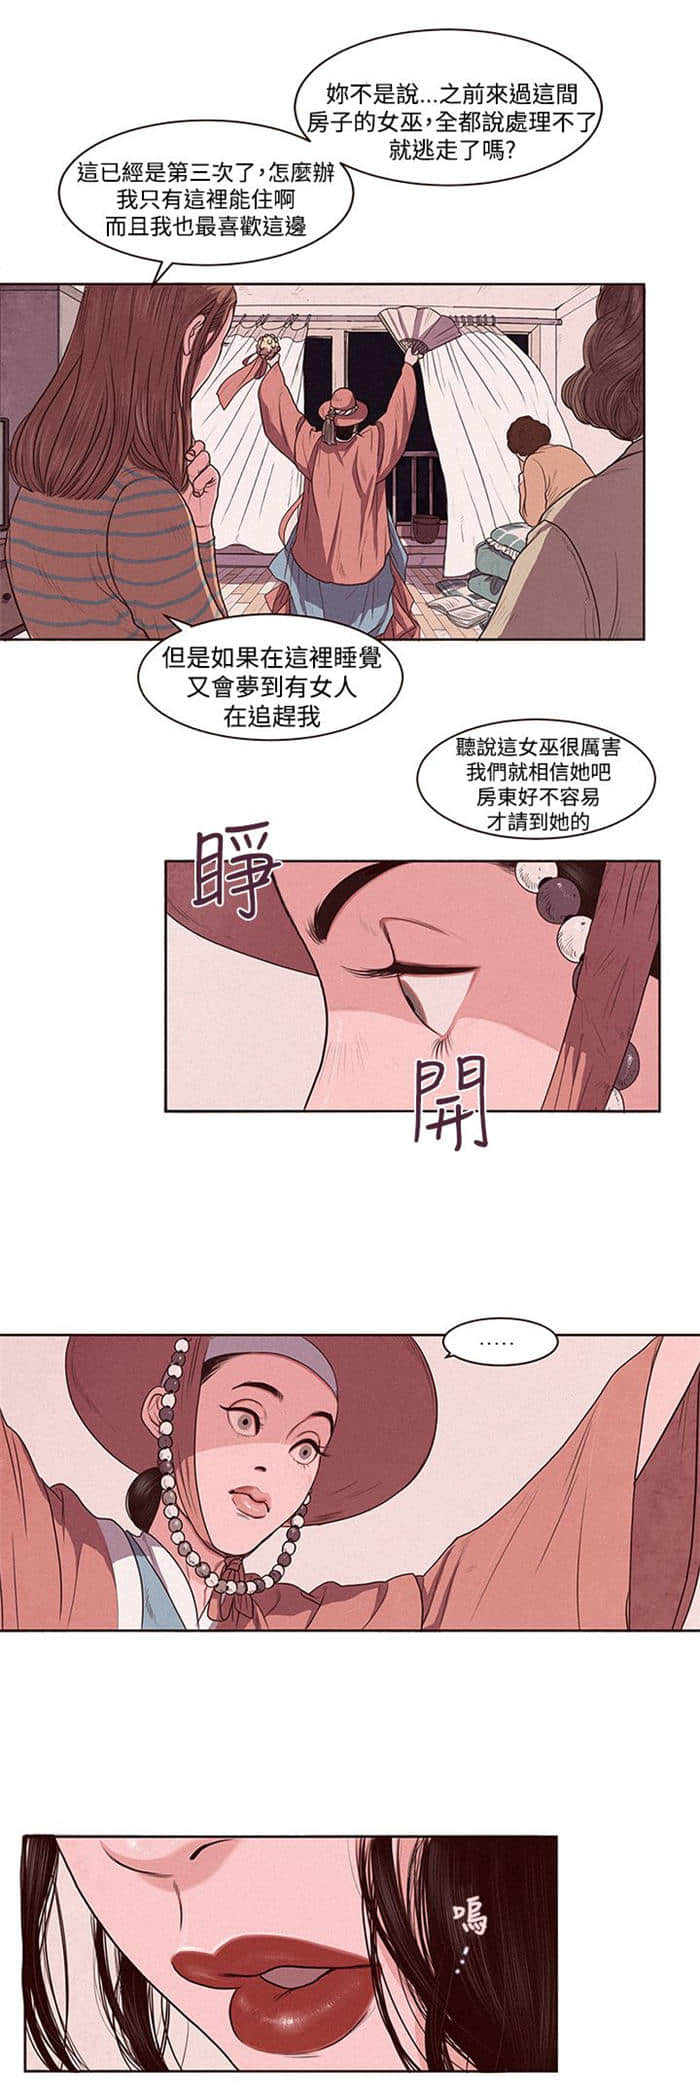 林月琴完结版&【韩国漫画】-全集免费观看